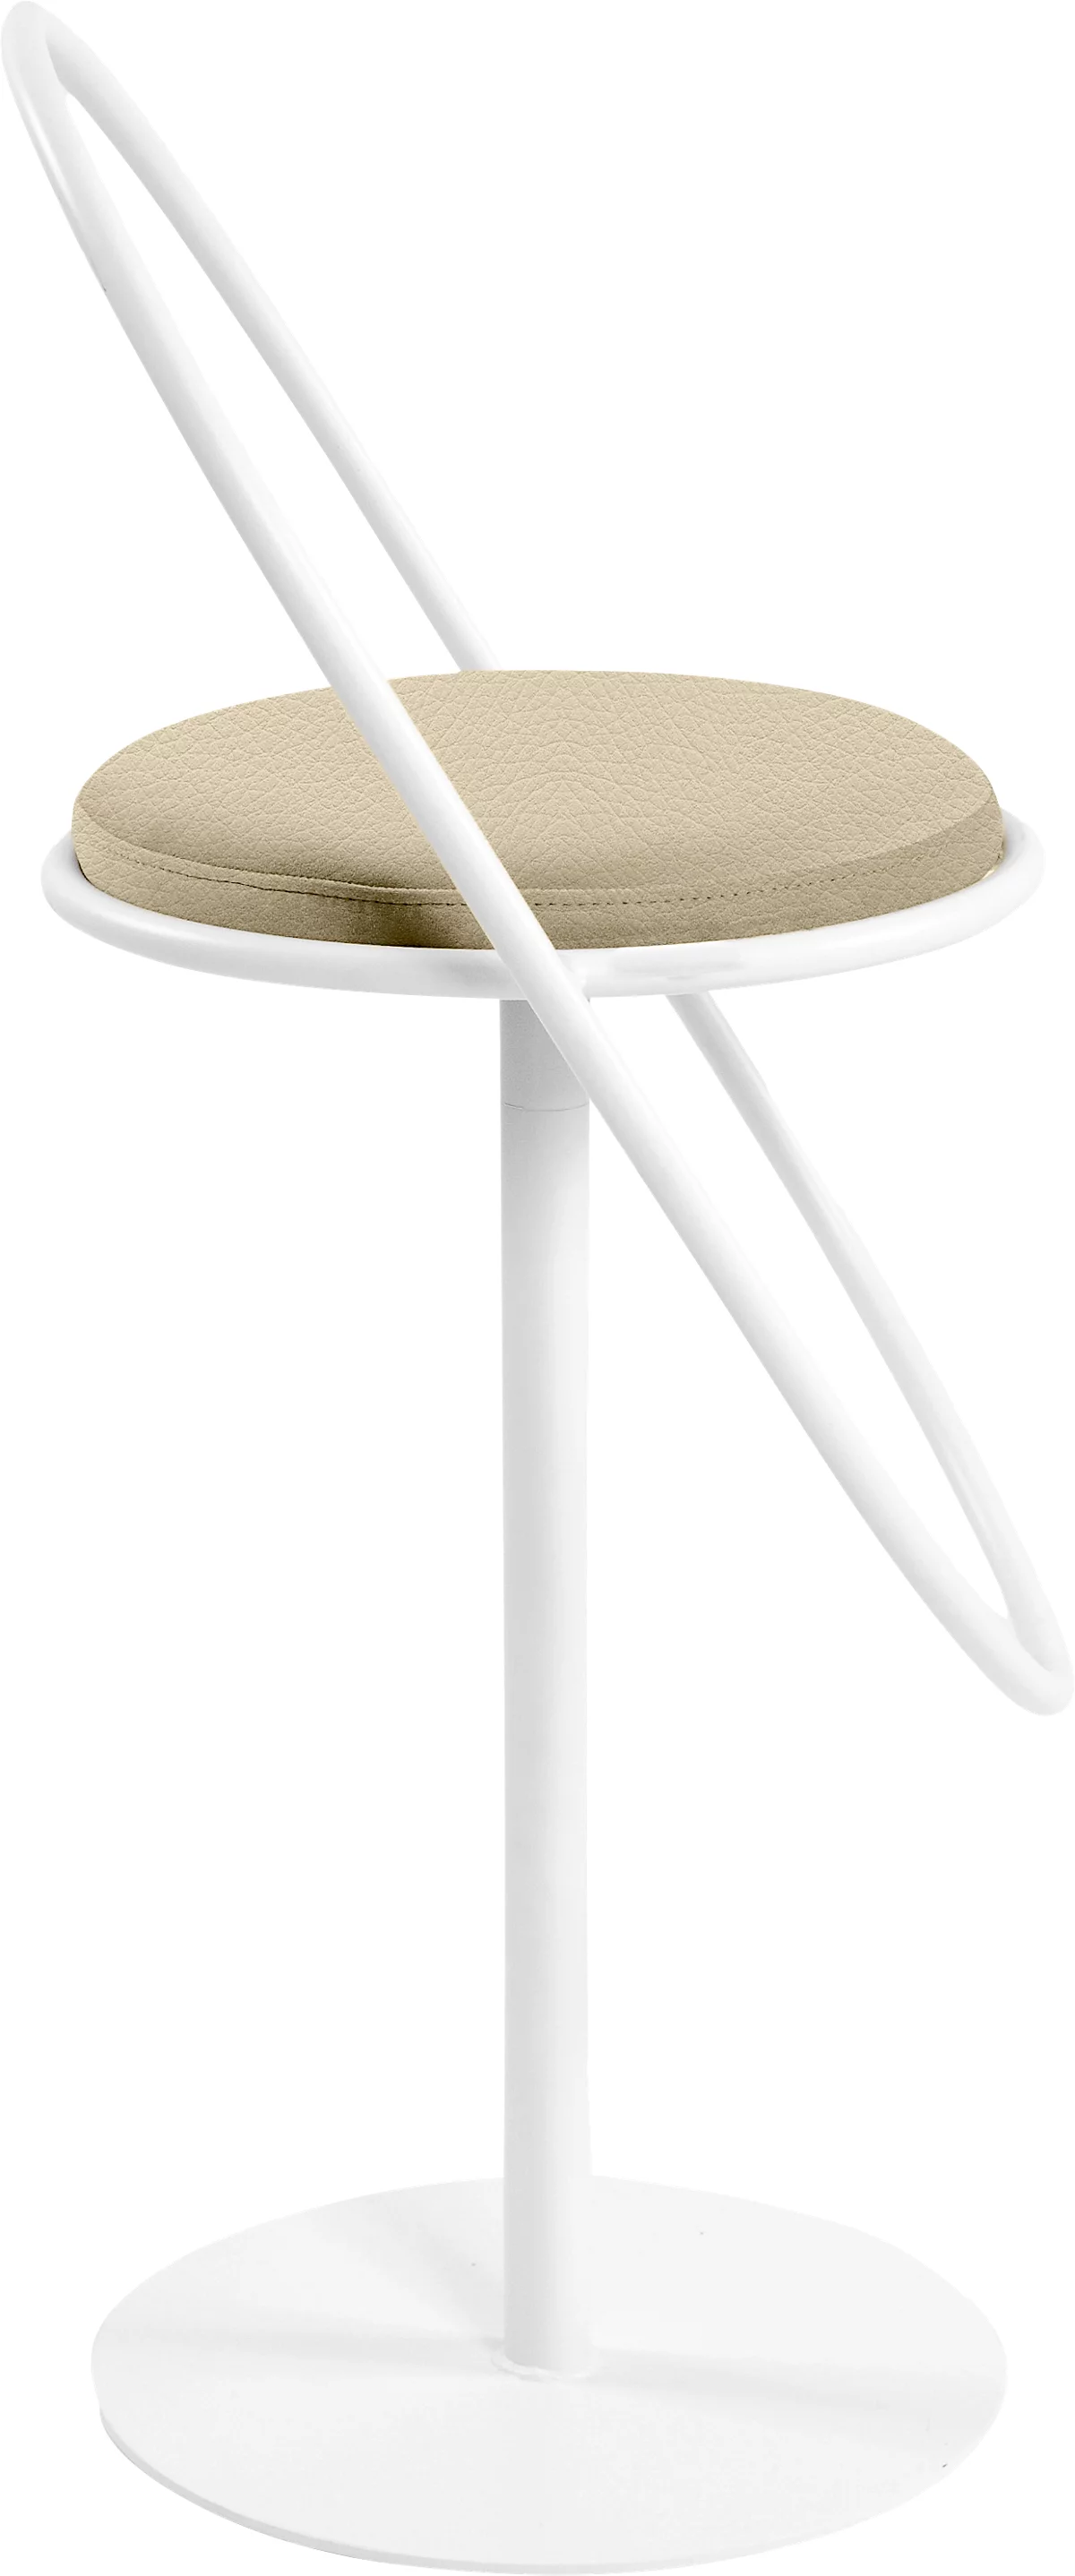 Barhocker Paperflow Saturne, mit Rückenlehne, Sitzhöhe 765 mm, gepolstert, zu 100 % recycelbar, Kunstlederbezug elfenbeinfarben, Gestell weiß